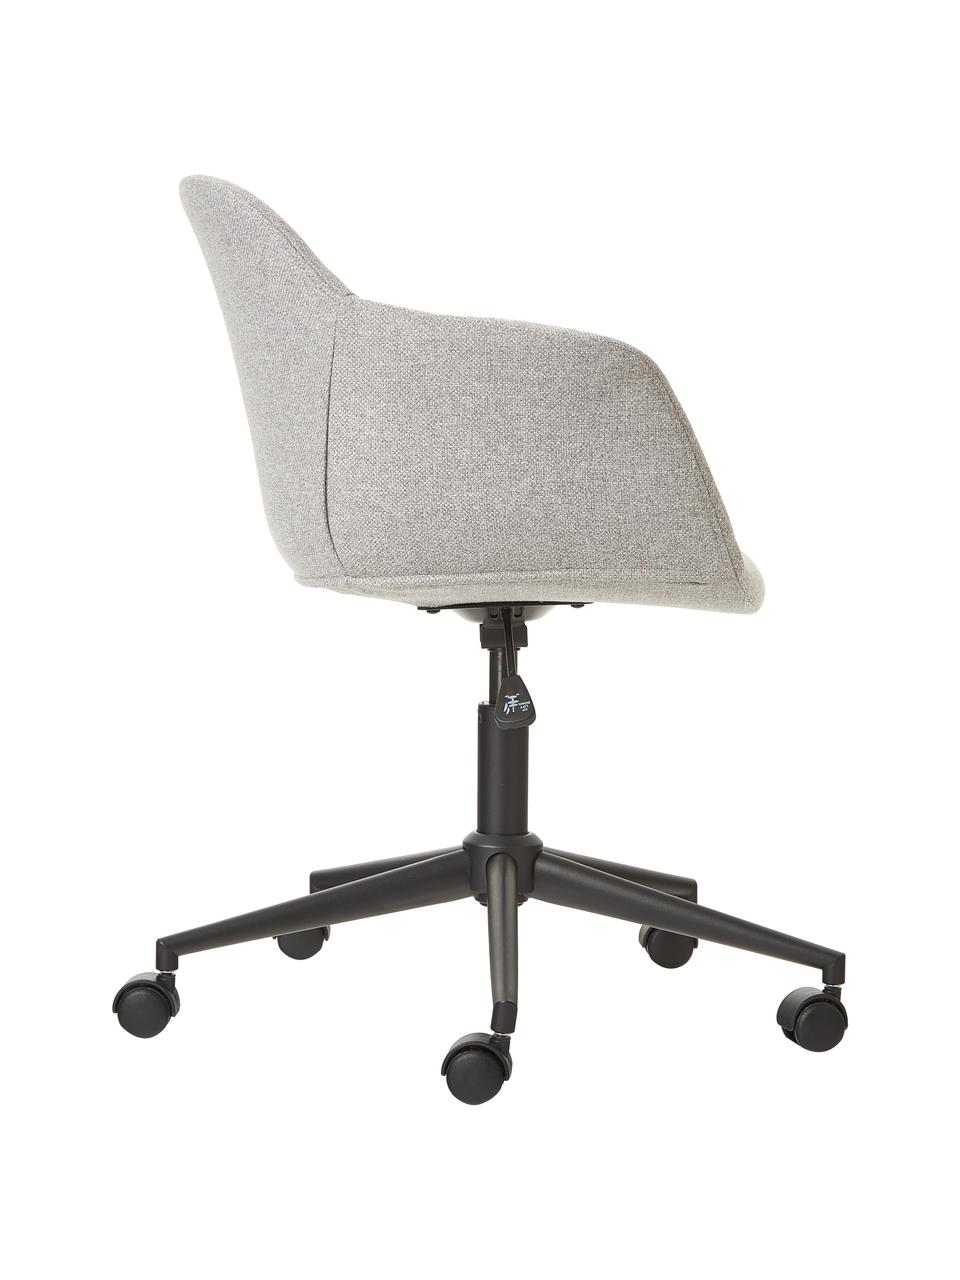 Gestoffeerde bureaustoel Fiji met smalle zitvlak, Bekleding: 100% polyester, Frame: gepoedercoat metaal, Wieltjes: kunststof, Geweven stof lichtgrijs, zwart, B 66 x D 66 cm